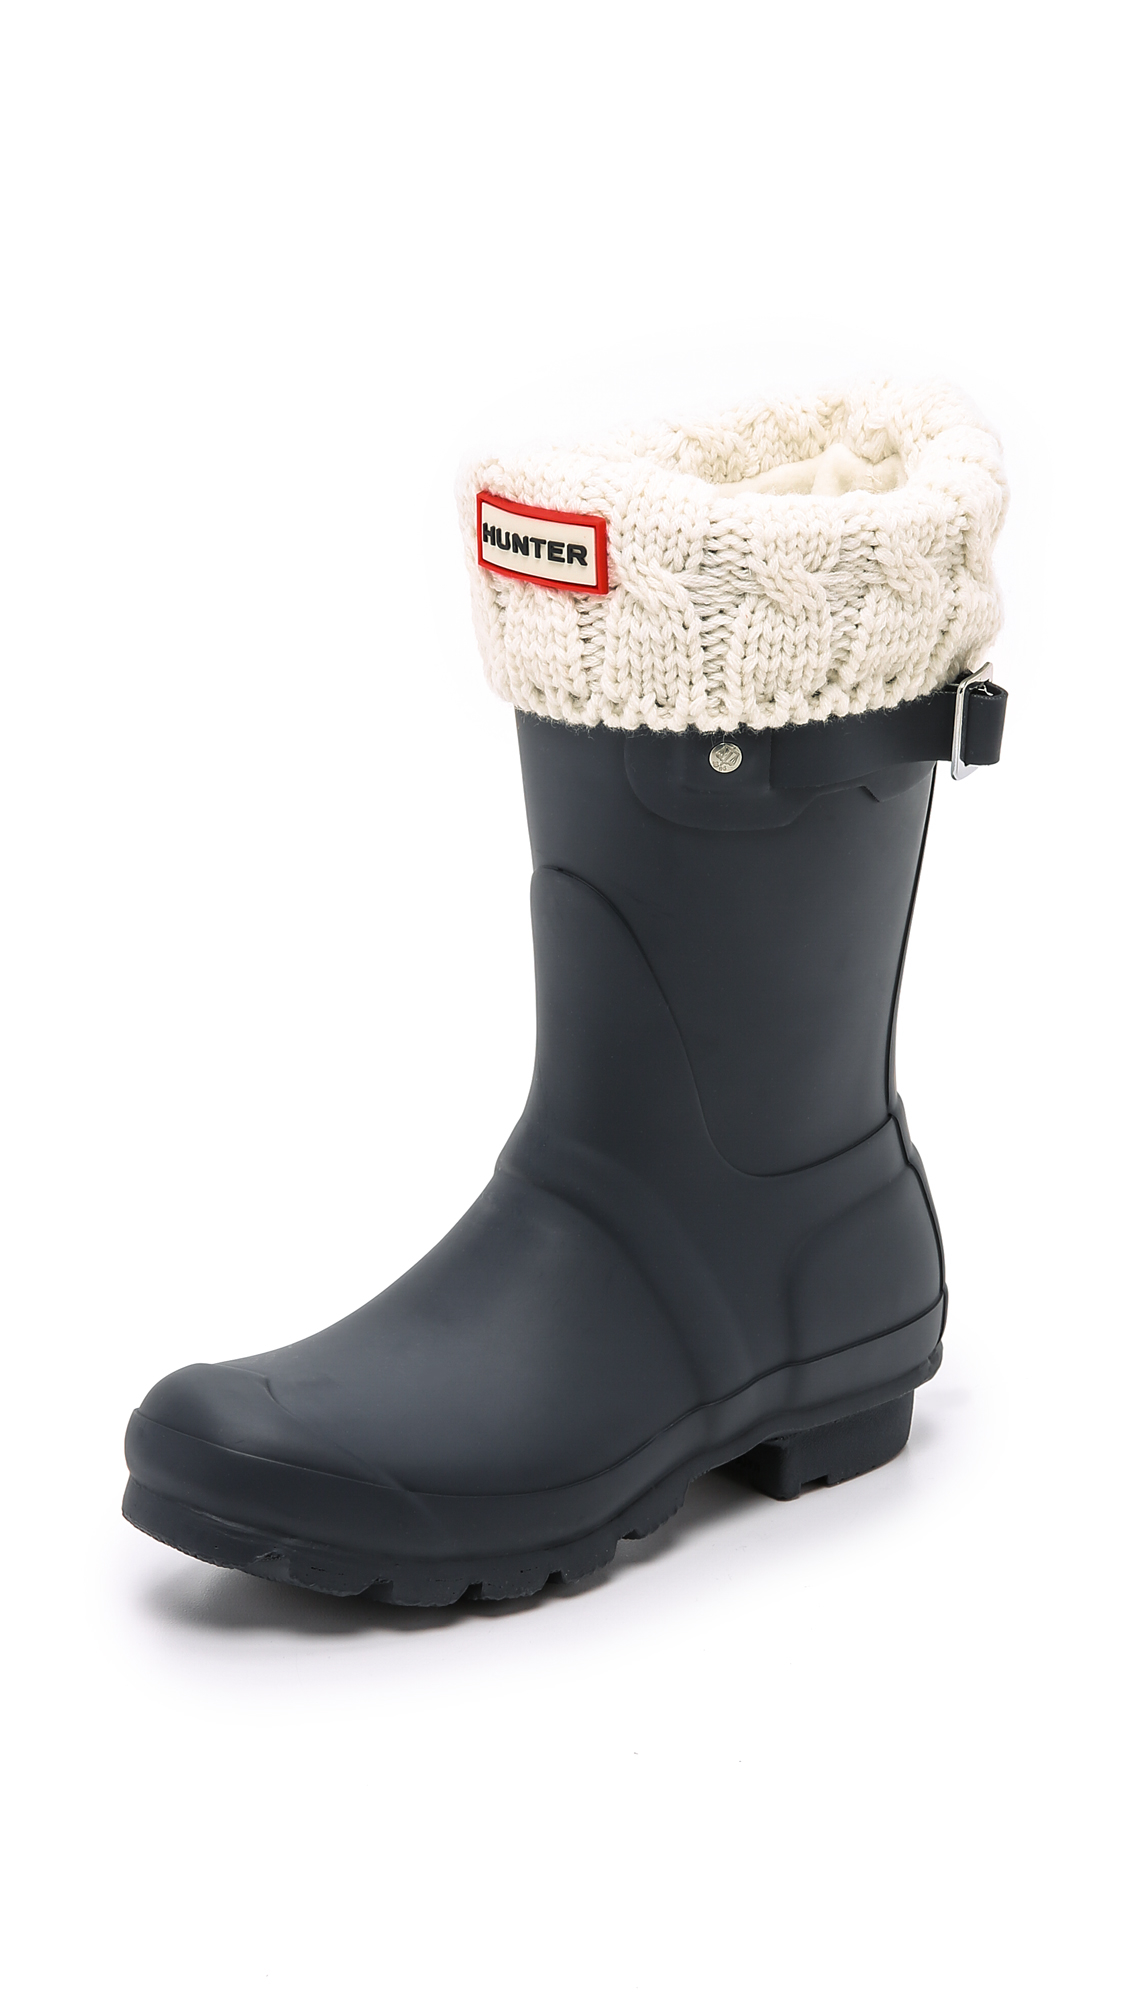 HUNTER Fleece Cable Short Boot Socks - Natural White - Lyst